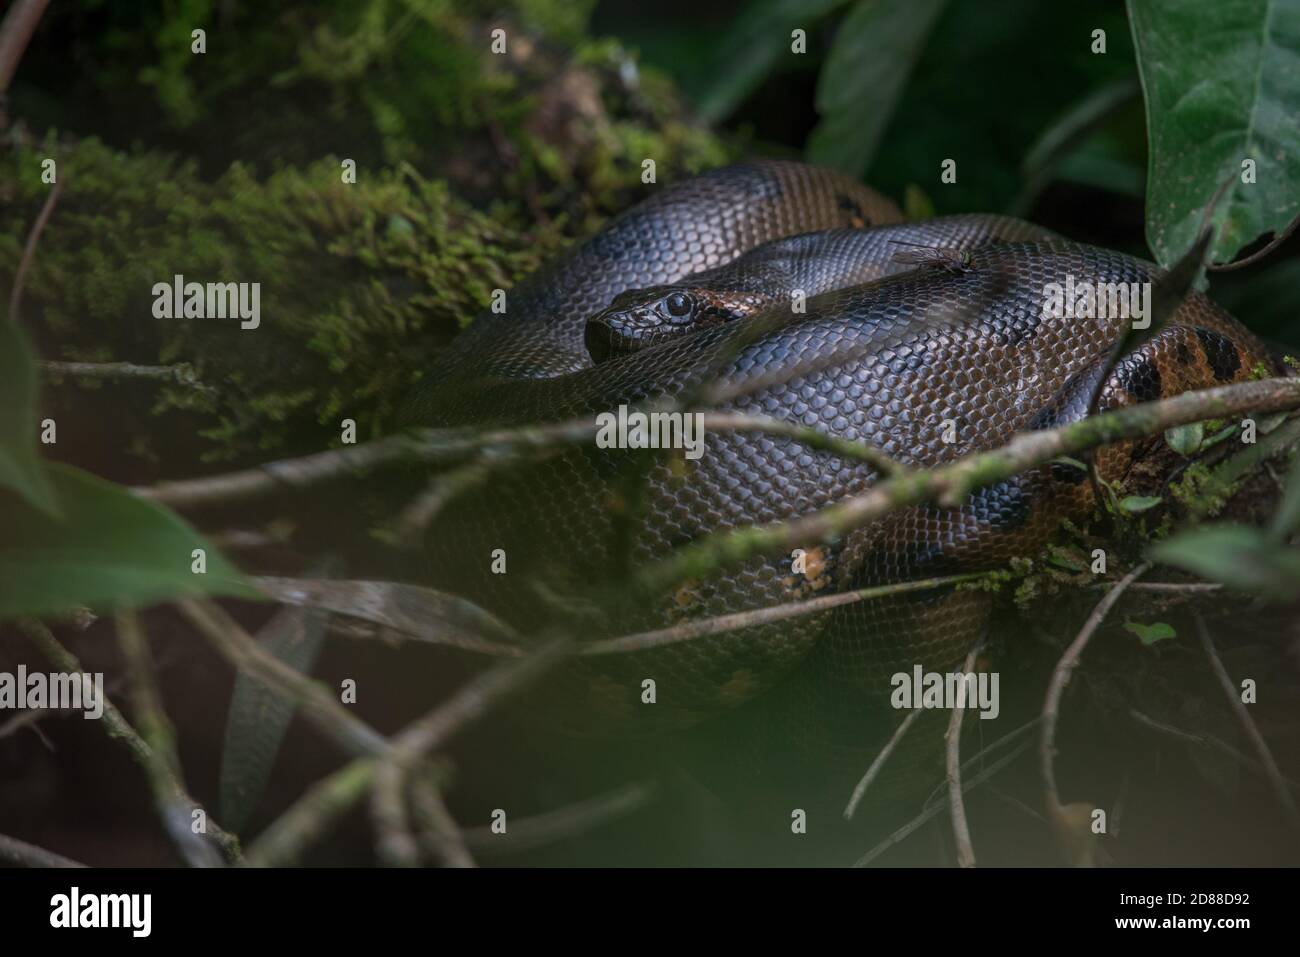 Eine wilde grüne Anakonda (Eunectes murinus) die weltweit größte ruhende Schlangenart im Wildreservat Cuyabeno im ecuadorianischen Amazonas. Stockfoto